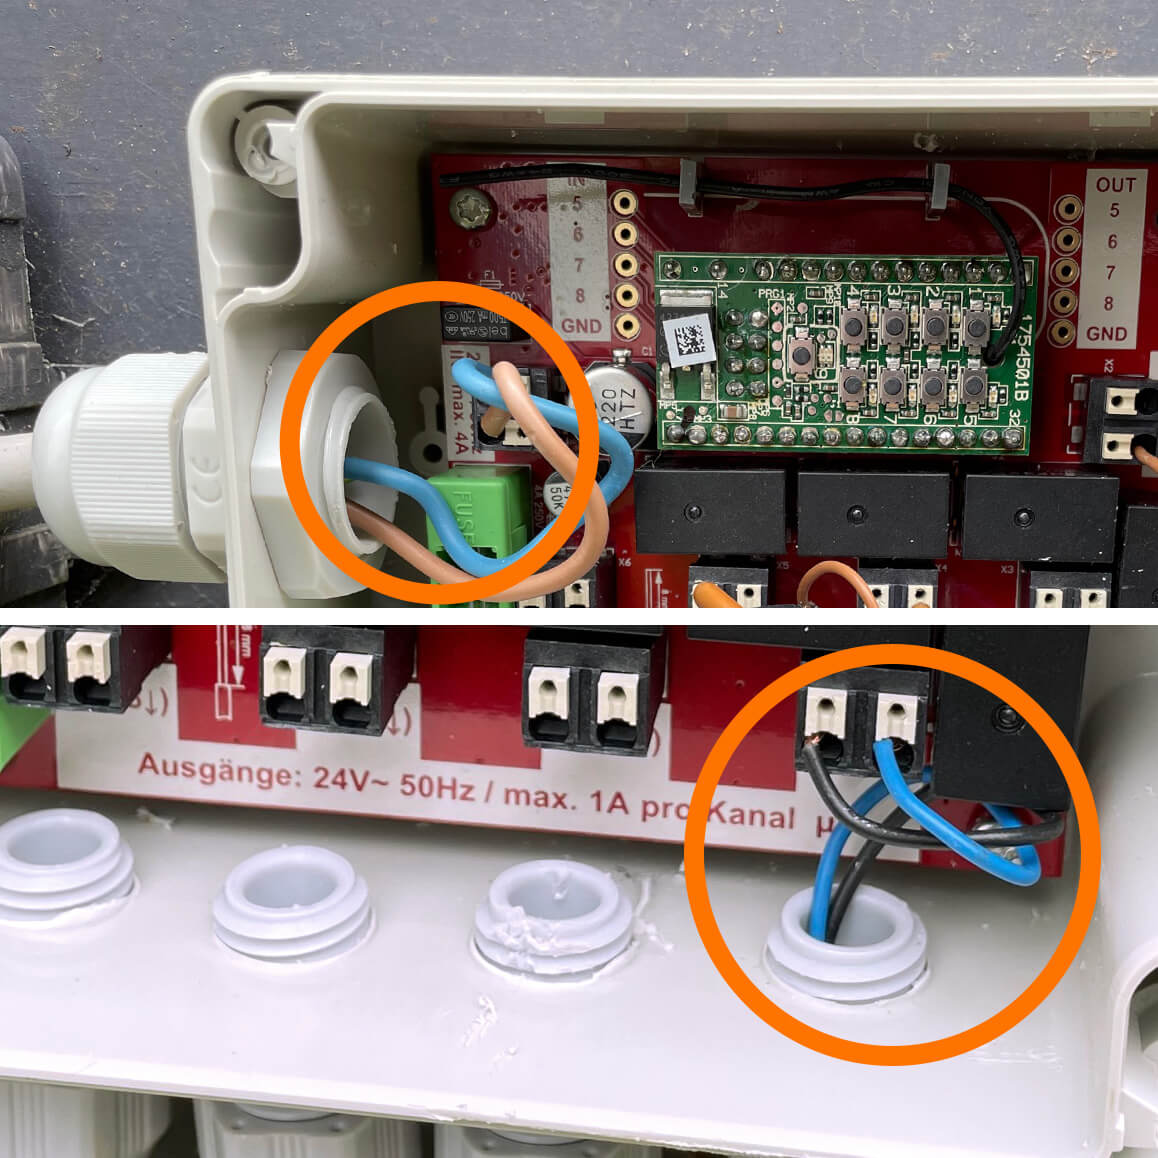 Bild 4: Das 24-V-Netzteil ist an die gekennzeichnete Buchse „24V/AC IN“ anzuschließen. Eine Verpolung ist aufgrund der Wechselspannung nicht möglich. Jedes einzelne Bewässerungsventil wird jeweils auf die gekennzeichneten Anschlussbuchsen „1“ – „4“ angeschlossen. Auch hier ist eine Verpolung durch Einsatz der 24-V-Wechselspannung ausgeschlossen. Sind mehr als vier Bewässerungsventile anzuschließen, so kann das Garten Ventil Interface gemäß der Anleitung kaskadiert werden. Weitere Ventile sind in diesem Fall dann an die Klemmen „5“ – „8“ anzuschließen.